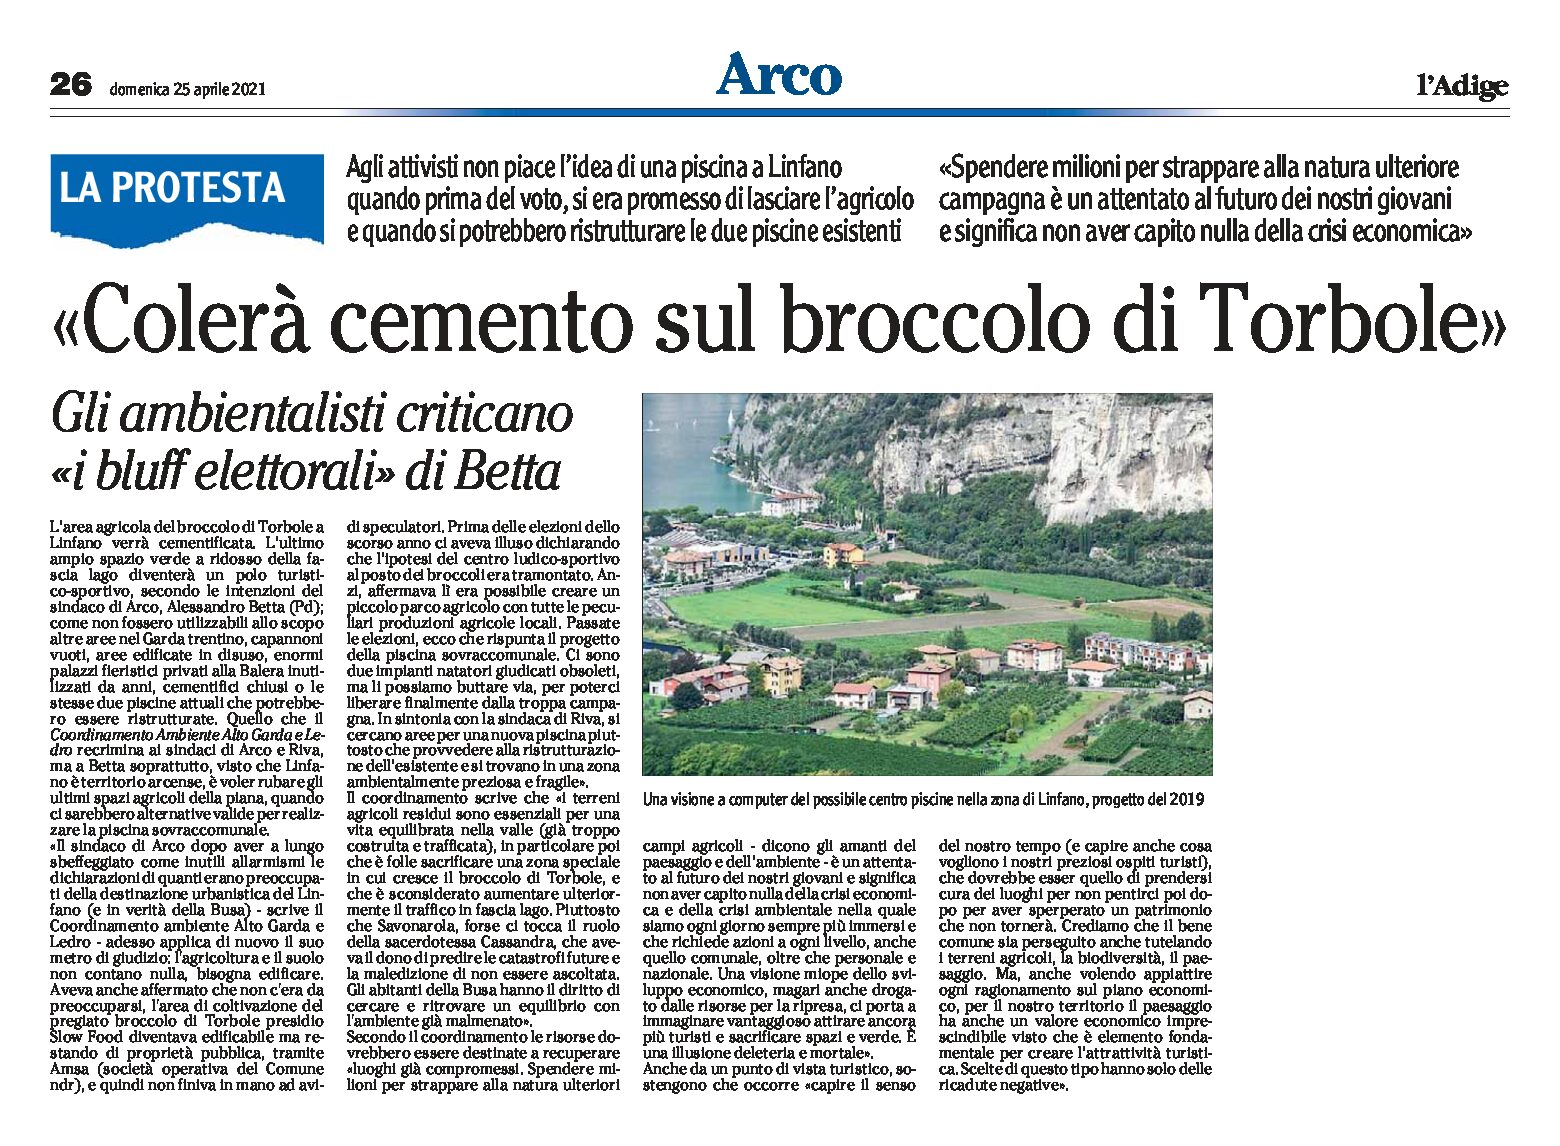 Arco, Linfano: gli ambientalisti “colerà cemento sull’area agricola del broccolo di Torbole”